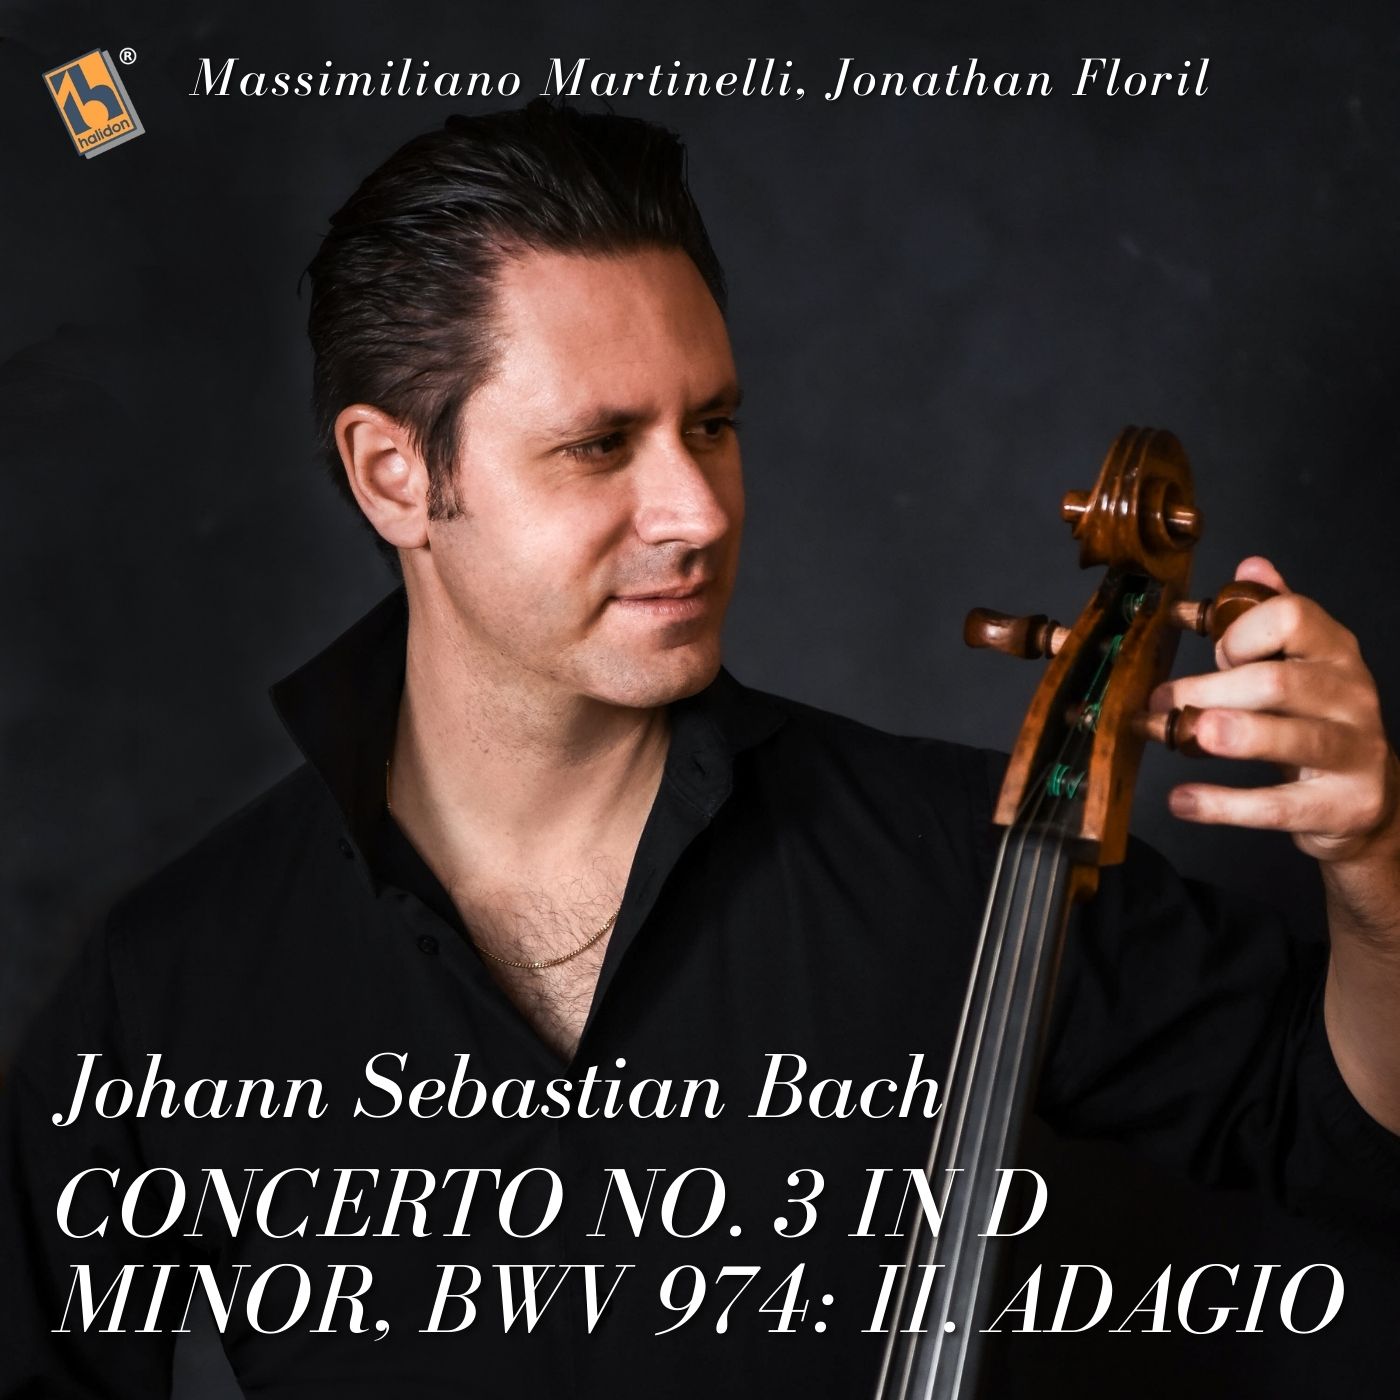 Bach: Concerto No. 3 in D Minor, BWV 974: II. Adagio (After Benedetto Marcello’s Oboe Concerto in D minor - Arr. for Cello and Piano by Orfeo Mandozzi)